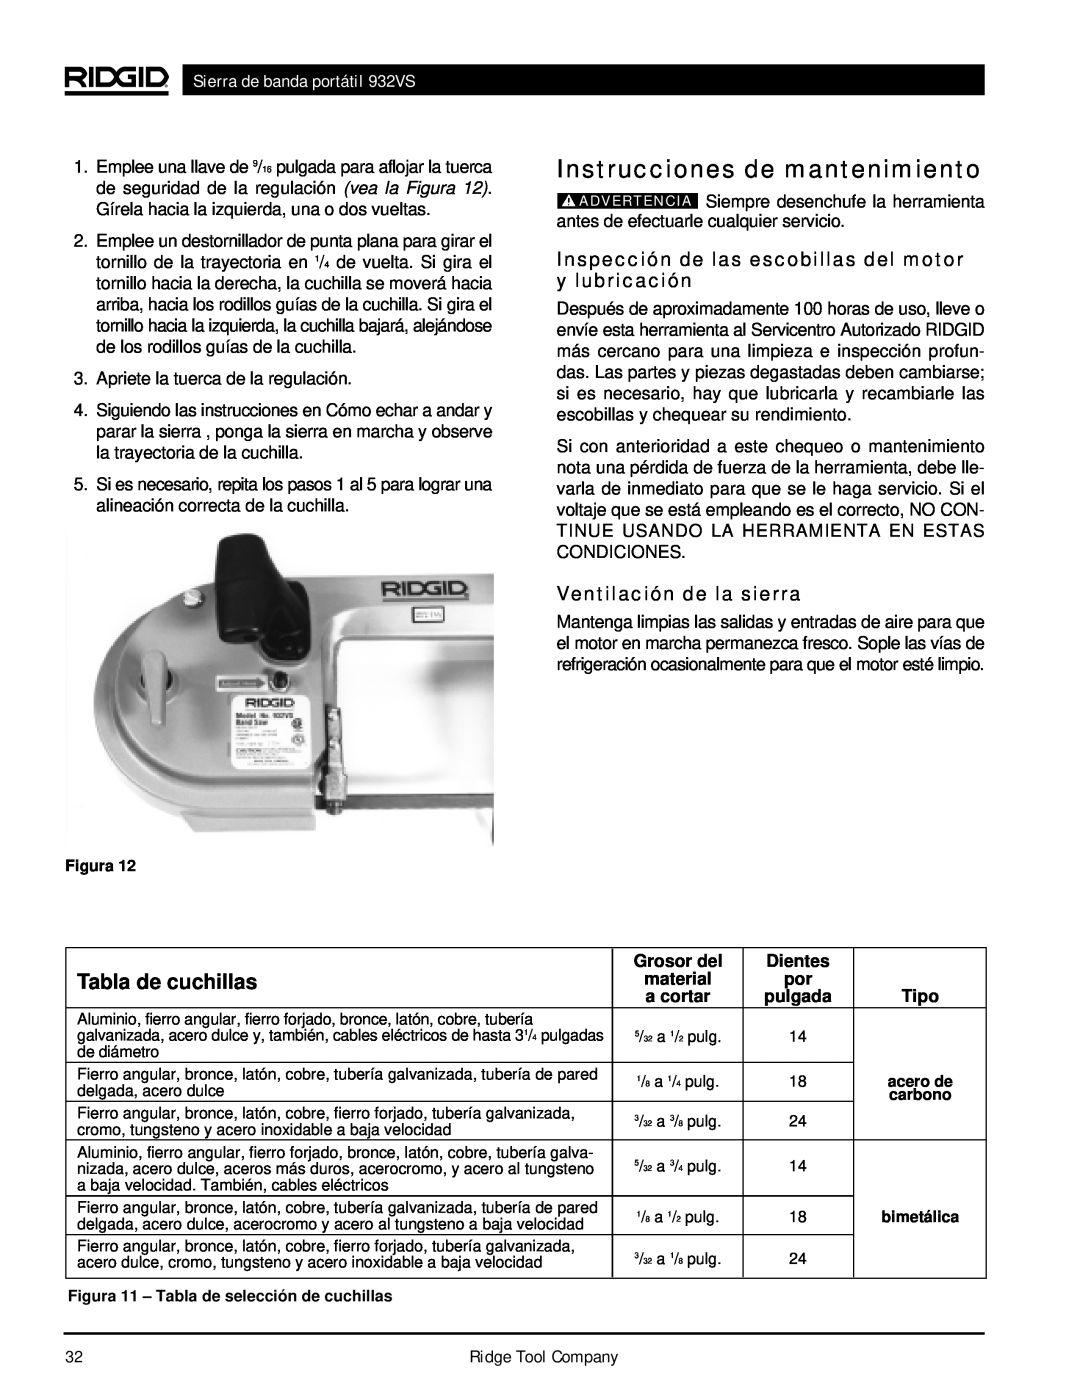 RIDGID 932VS Instrucciones de mantenimiento, Tabla de cuchillas, Inspección de las escobillas del motor y lubricación 